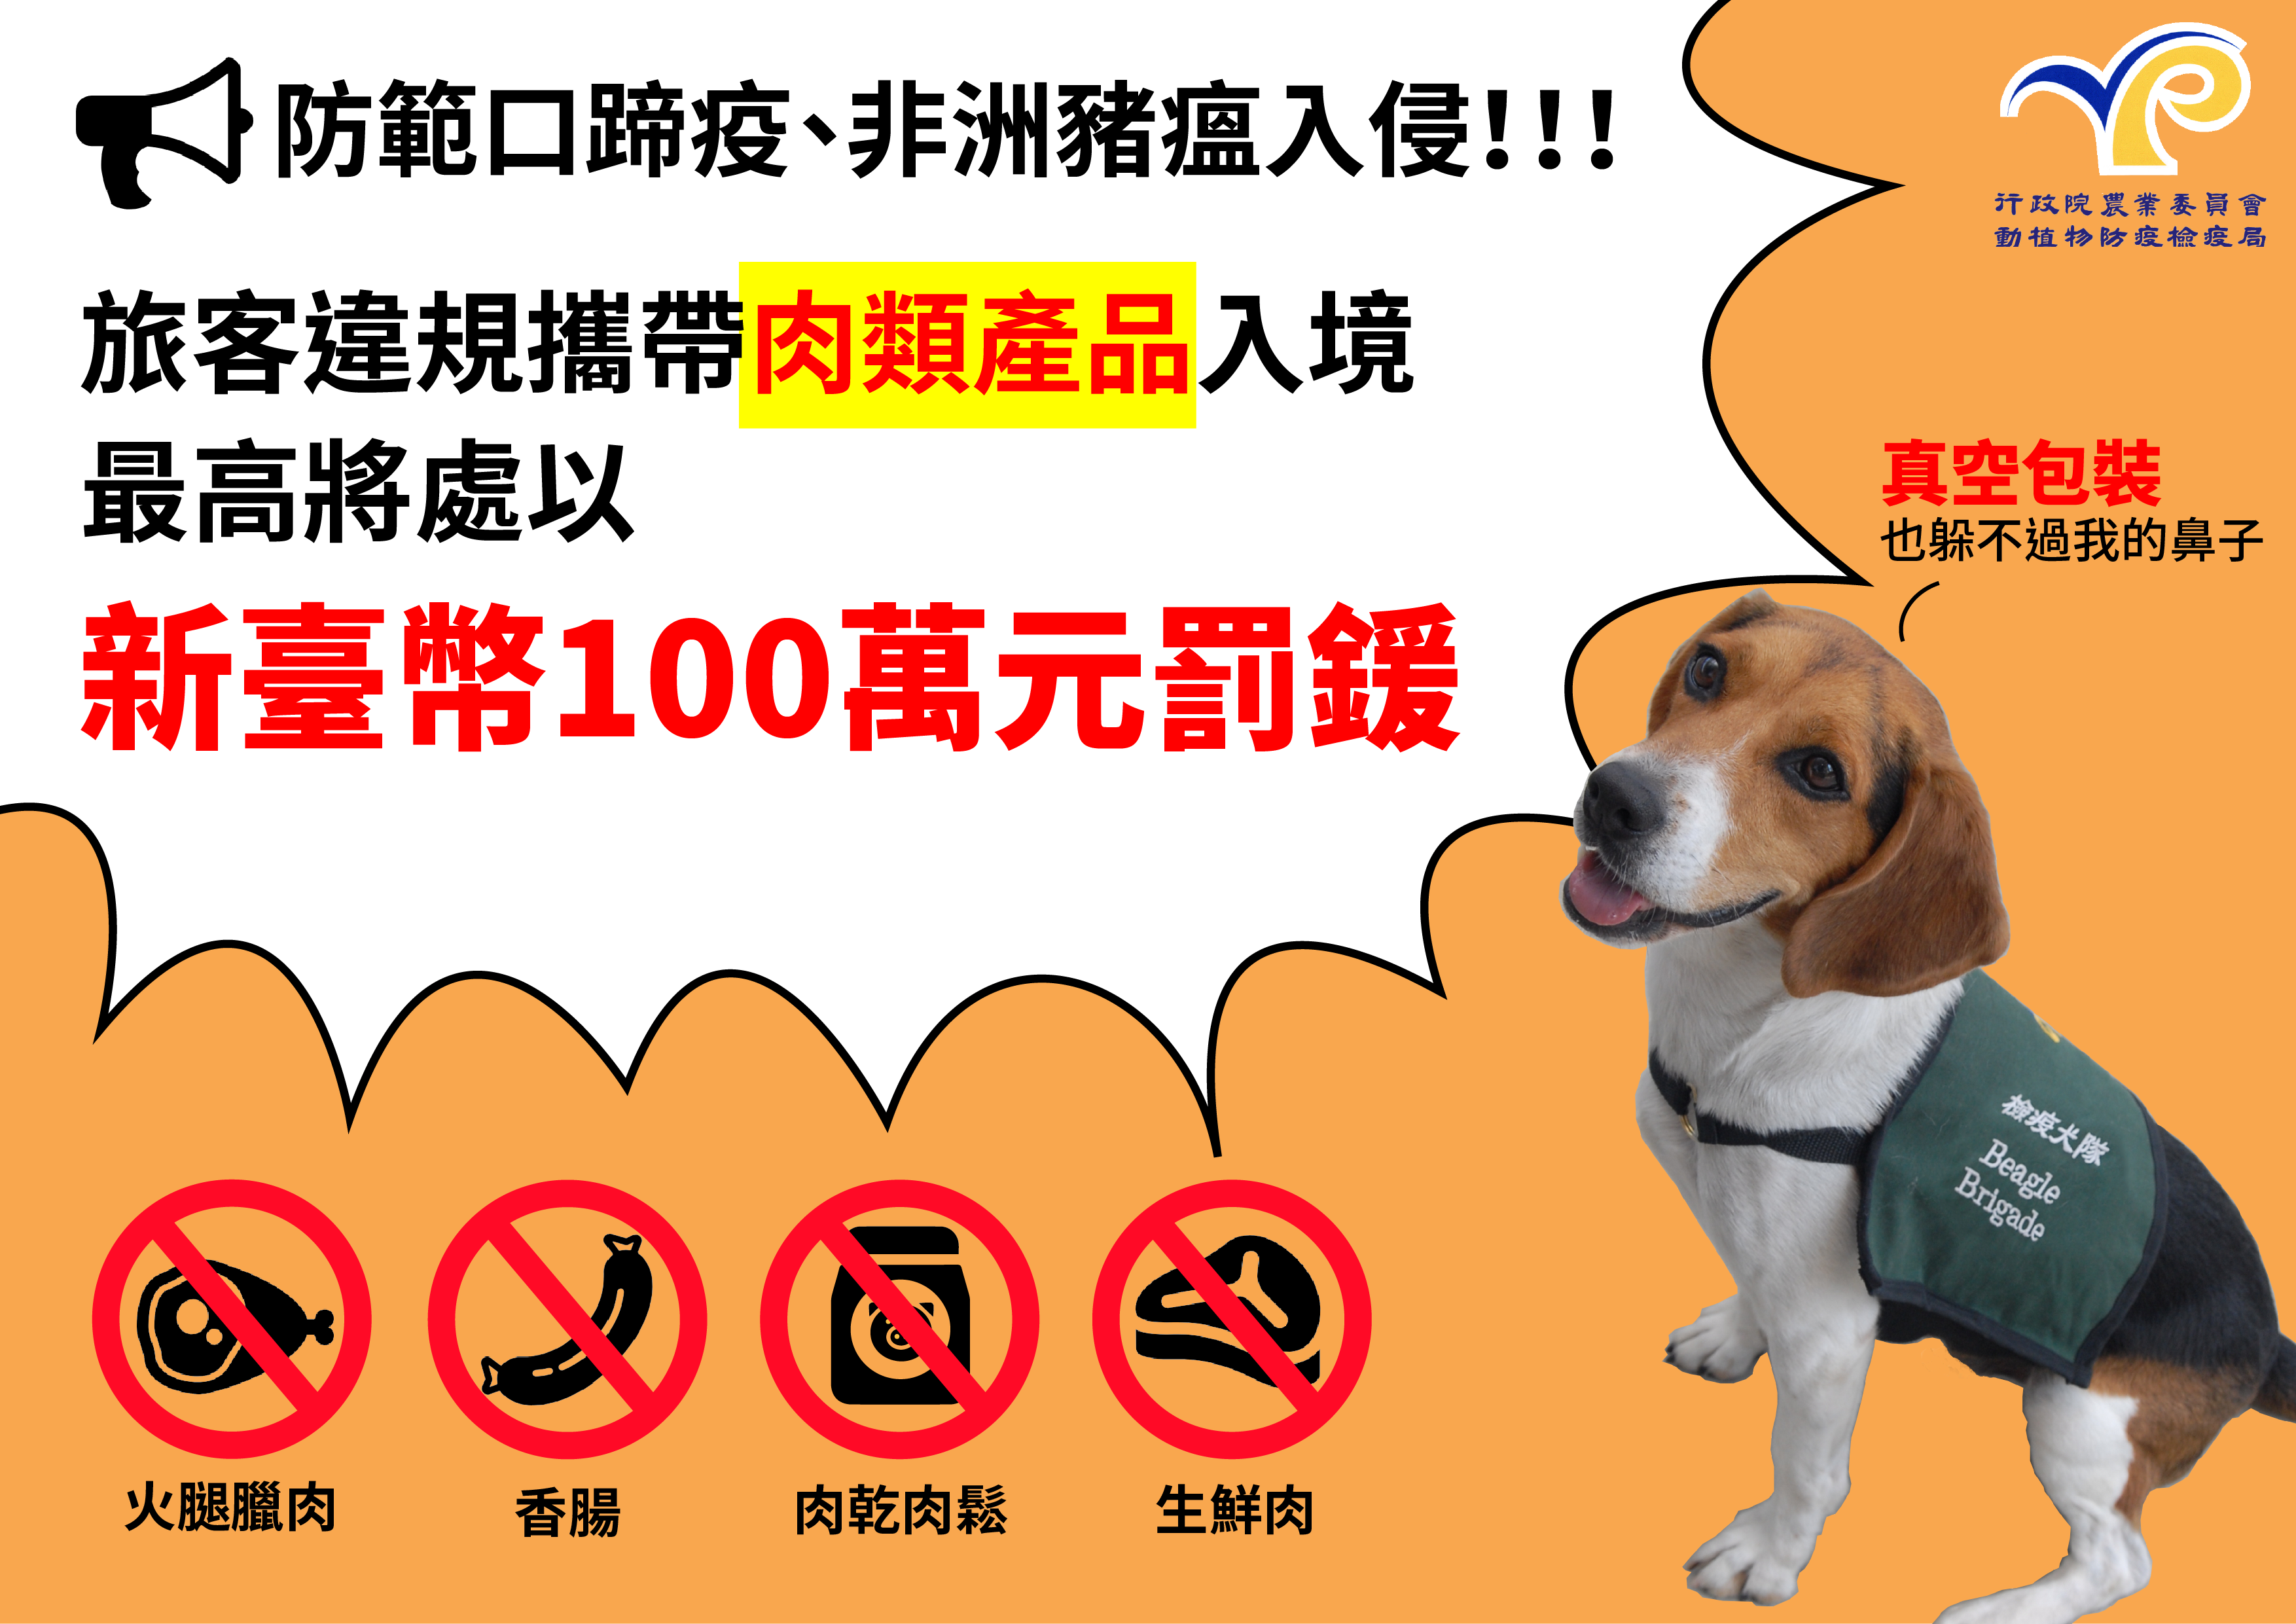 旅客違規攜帶肉類產品入境最高將處以新臺幣100萬元罰鍰(中文)